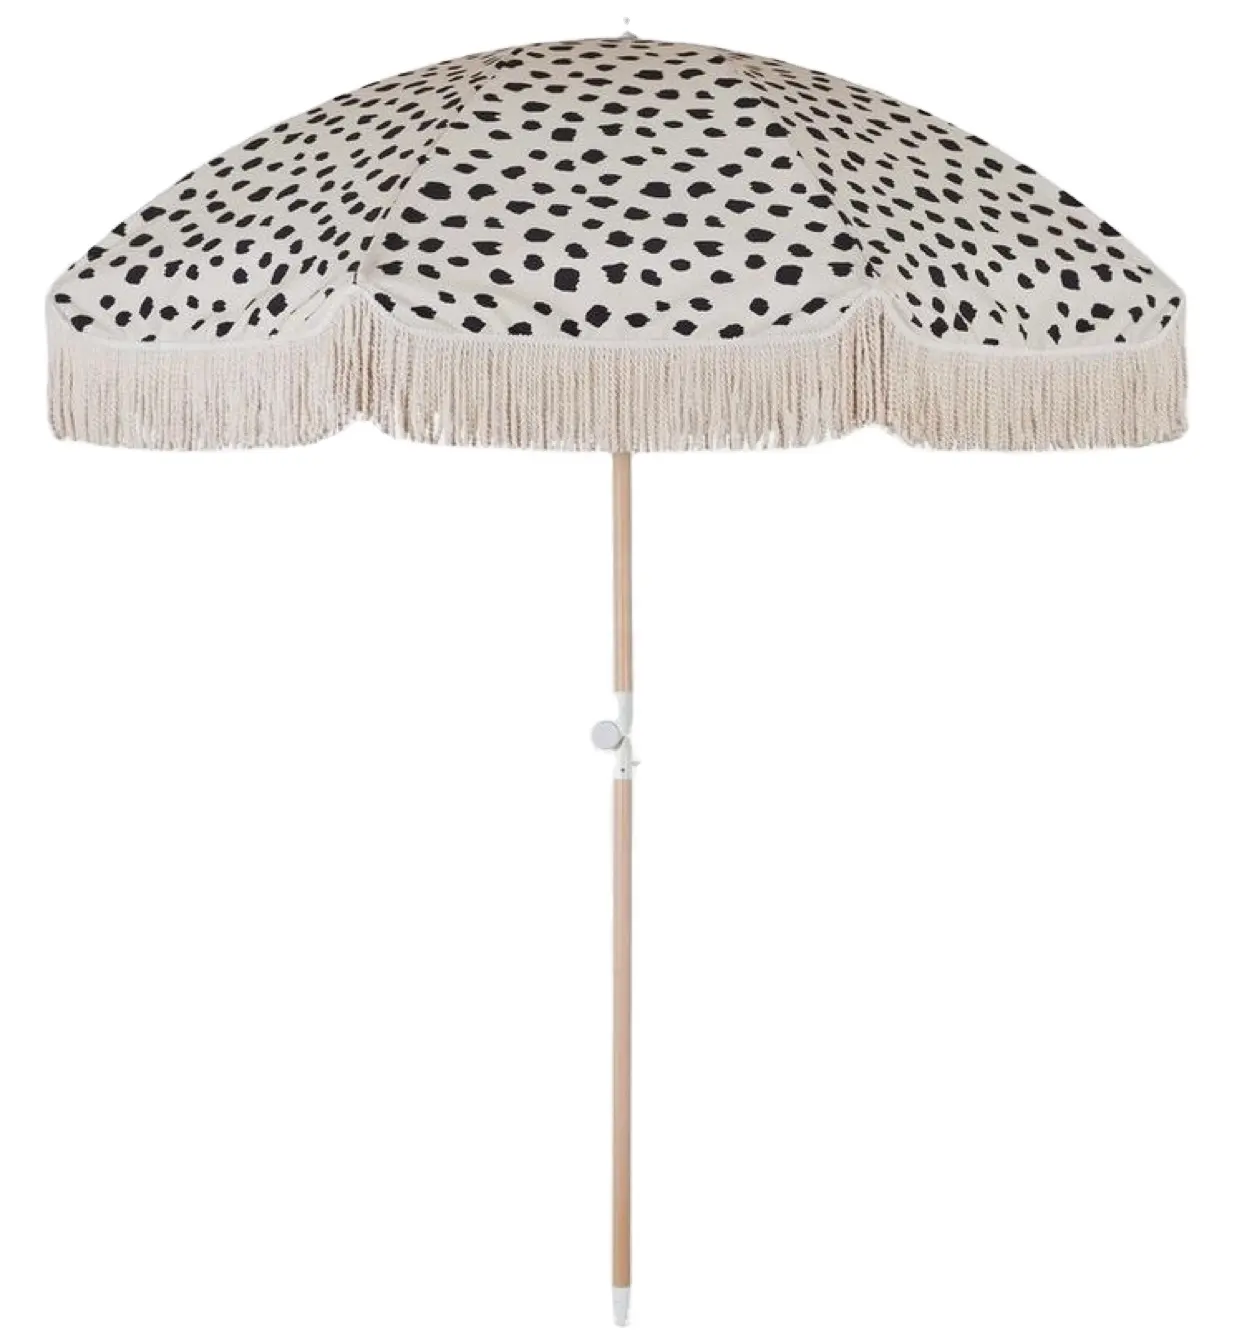 ビーチはアメリカで低木の木製の太陽の傘を作りました、木製のコラムの椅子が付いているビーチの傘